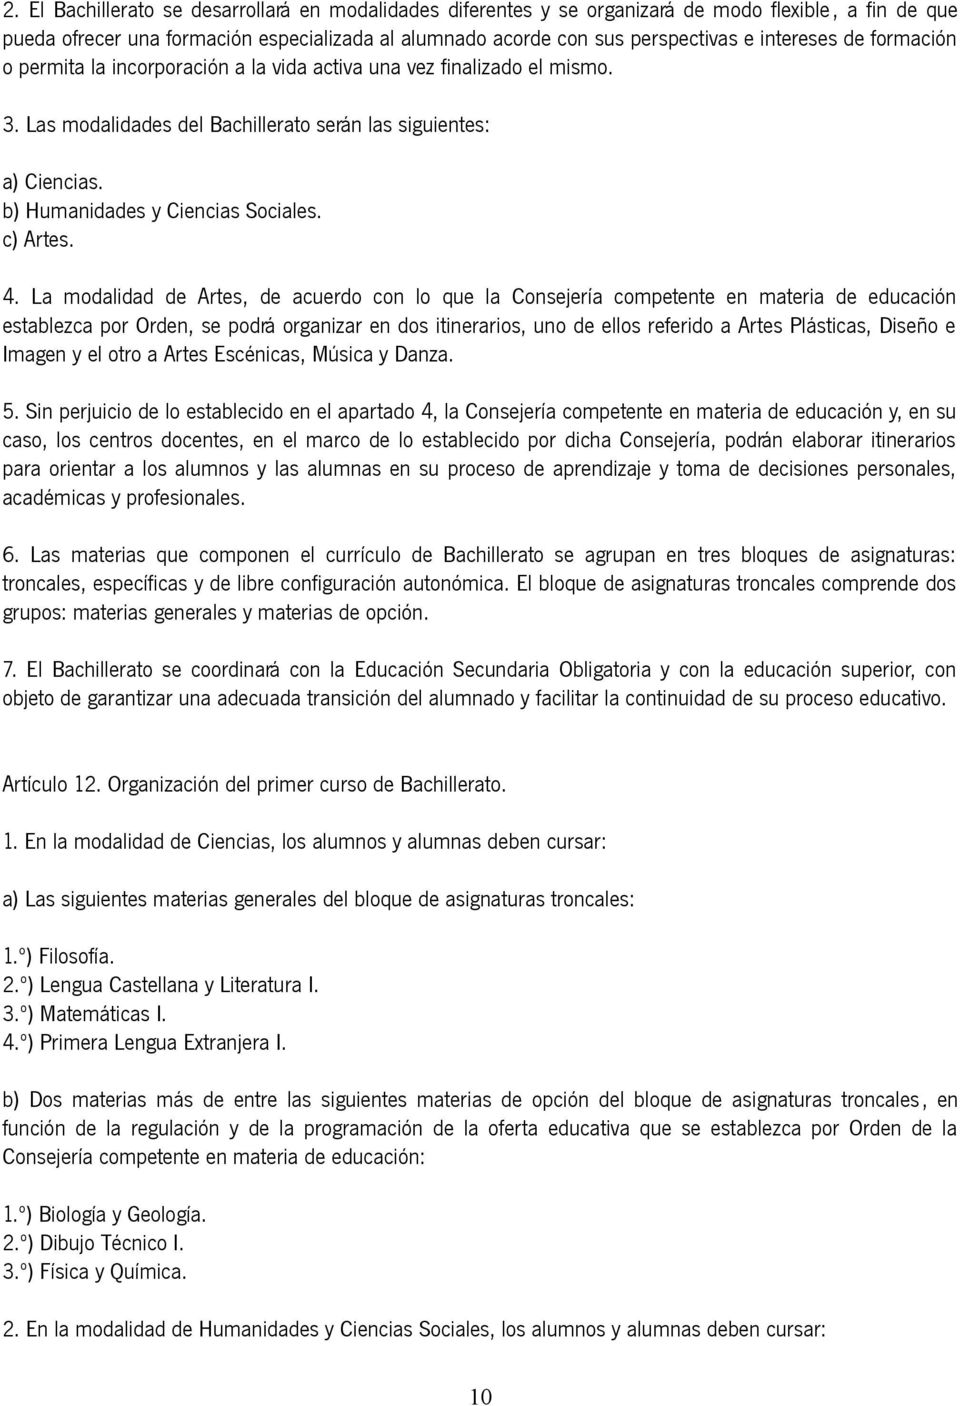 b) Humanidades y Ciencias Sociales. c) Artes. 4.